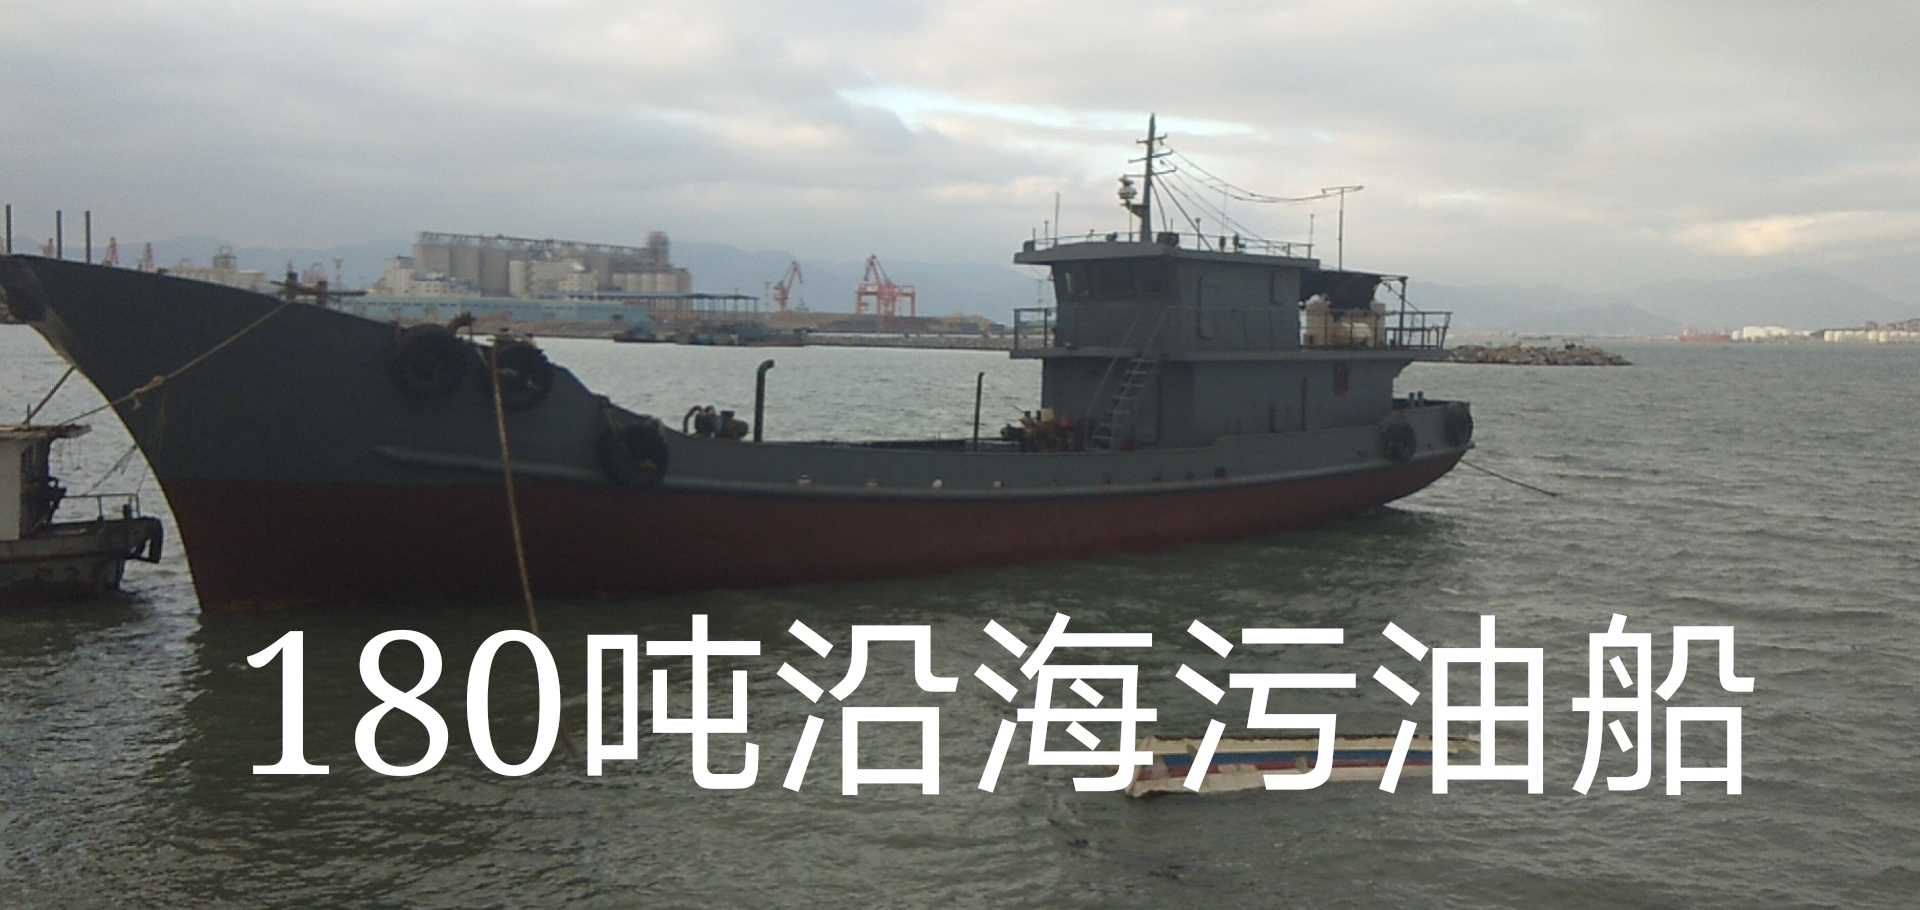 180吨沿海污油船